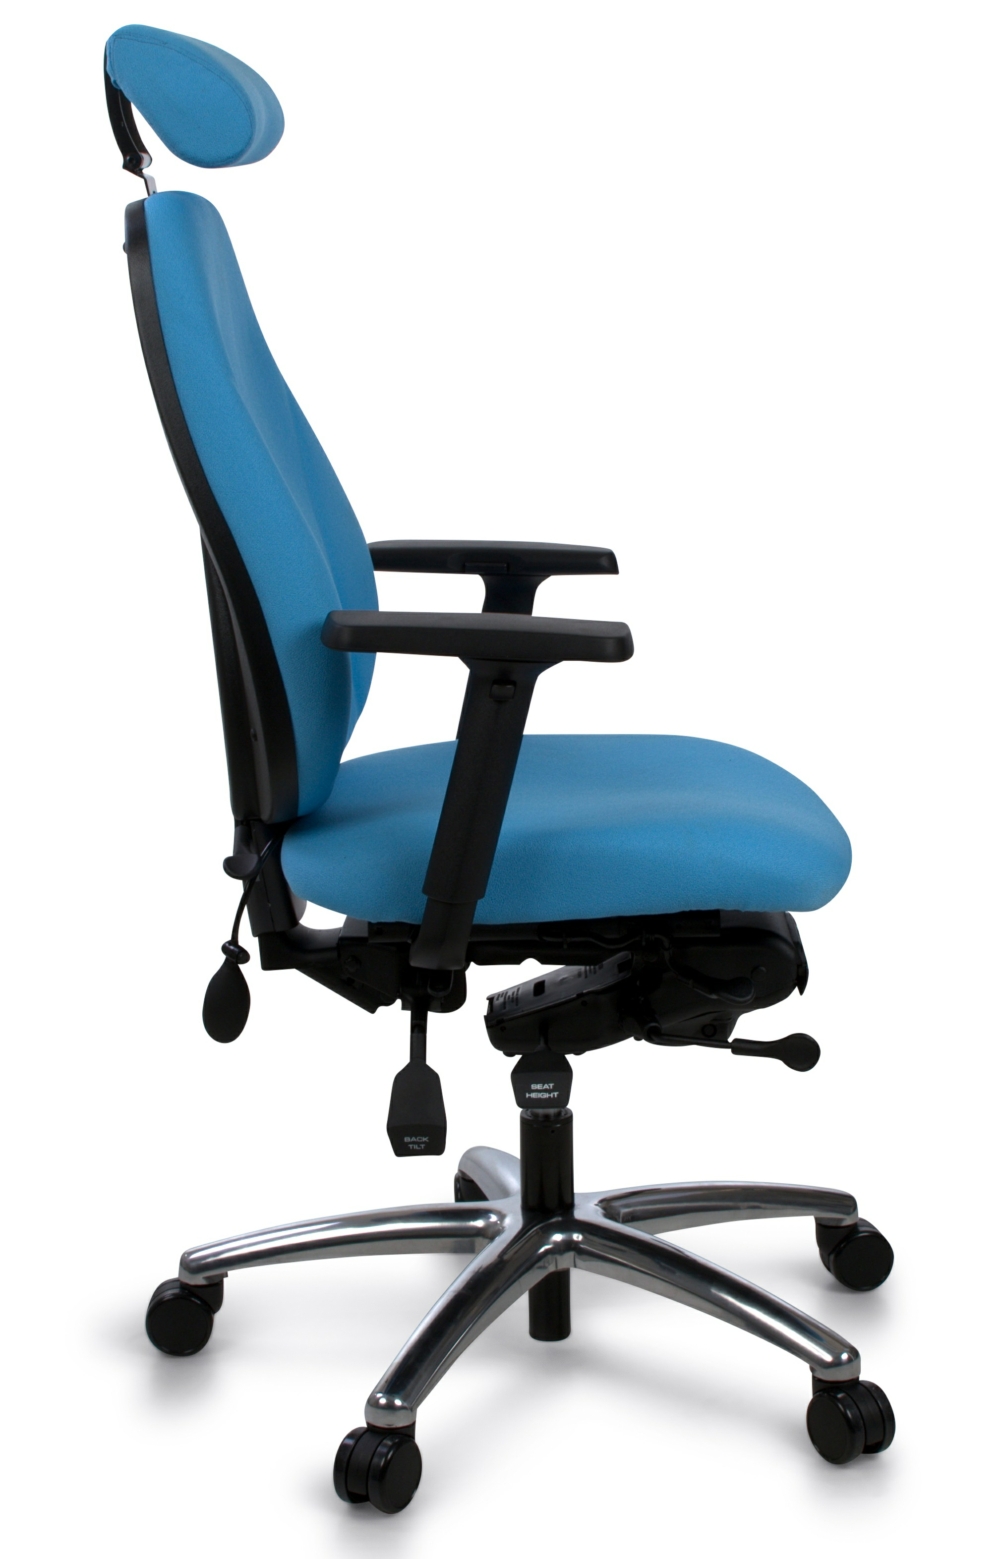 Benefits of Using Ergonomic Chairs